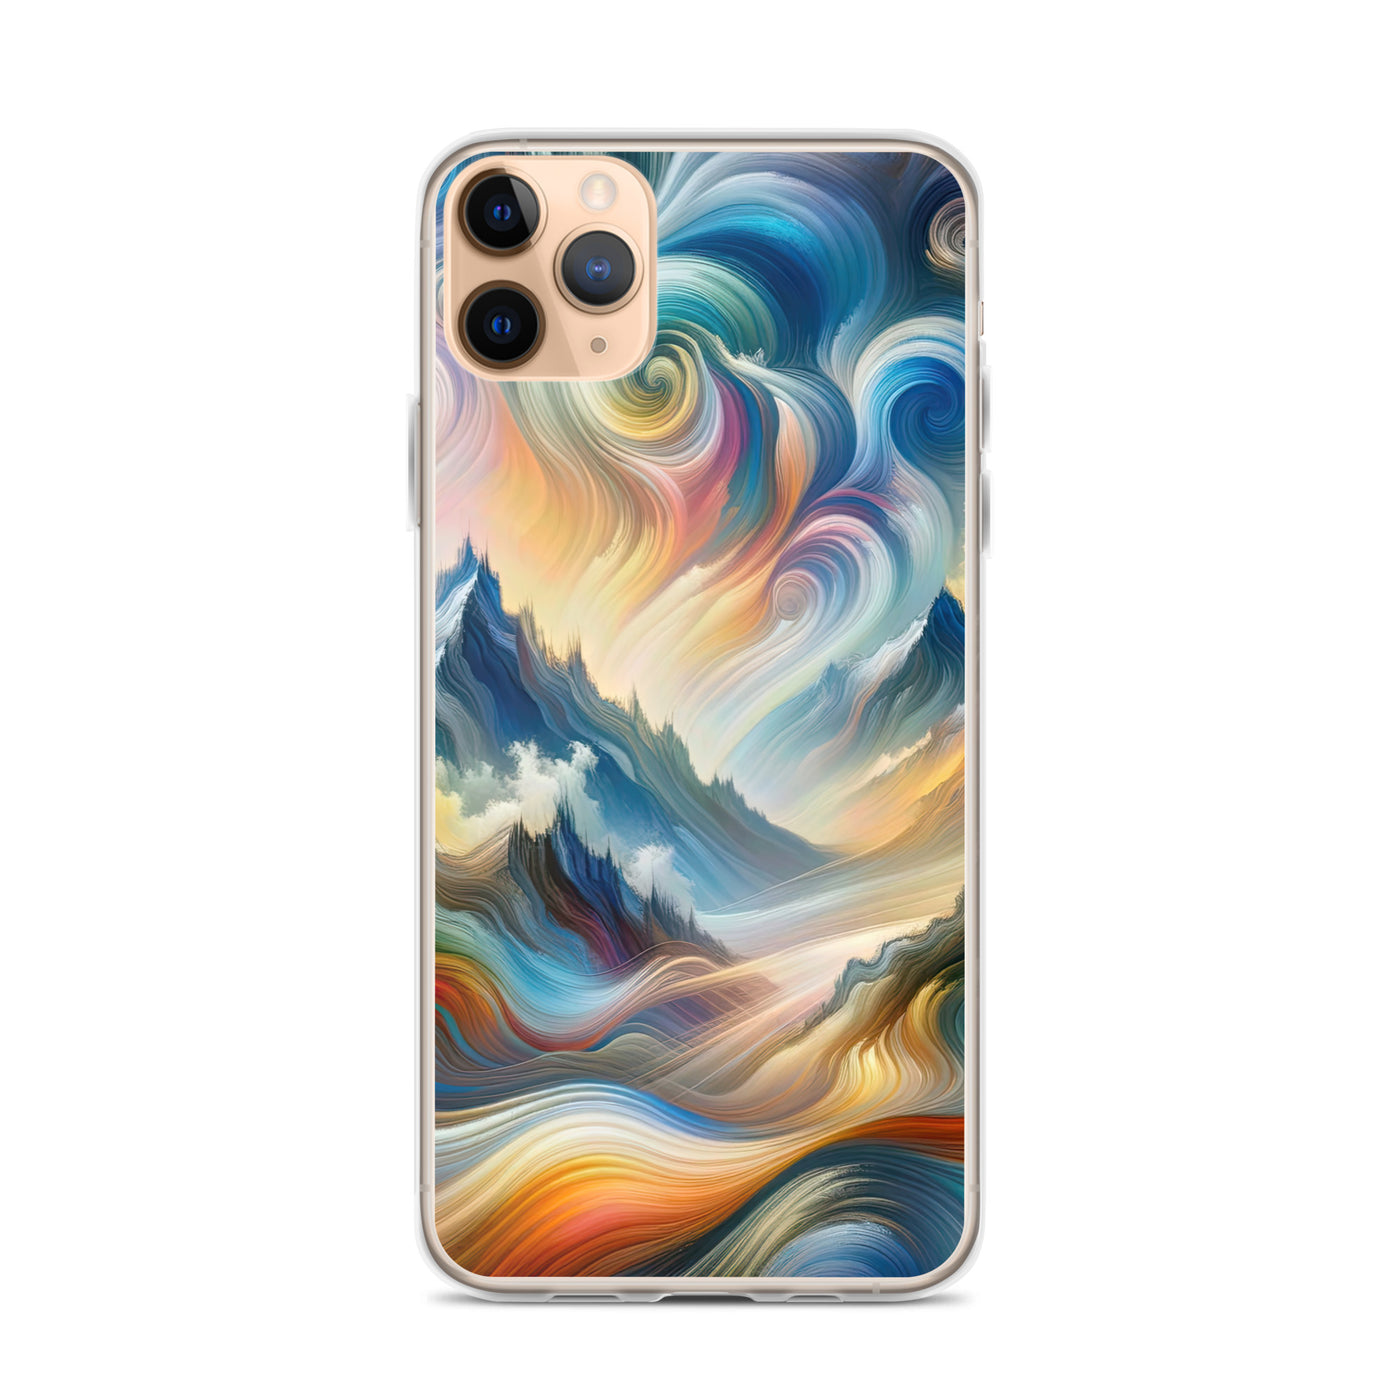 Ätherische schöne Alpen in lebendigen Farbwirbeln - Abstrakte Berge - iPhone Schutzhülle (durchsichtig) berge xxx yyy zzz iPhone 11 Pro Max